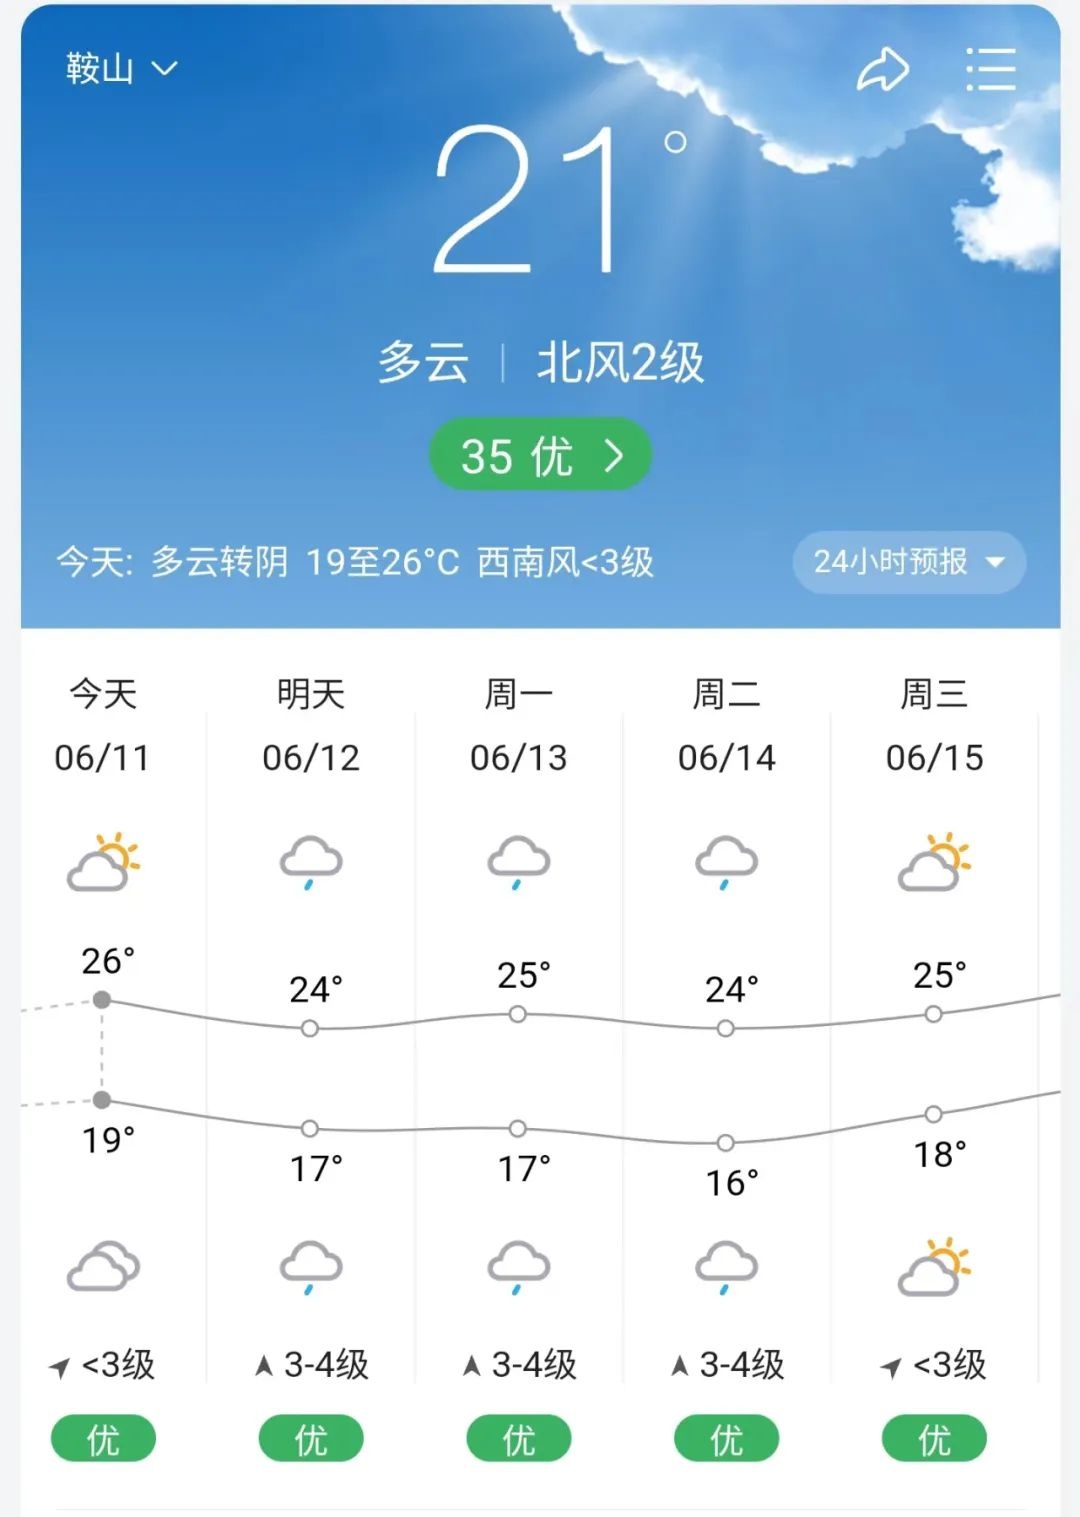 鞍山天气预报一周天气图片